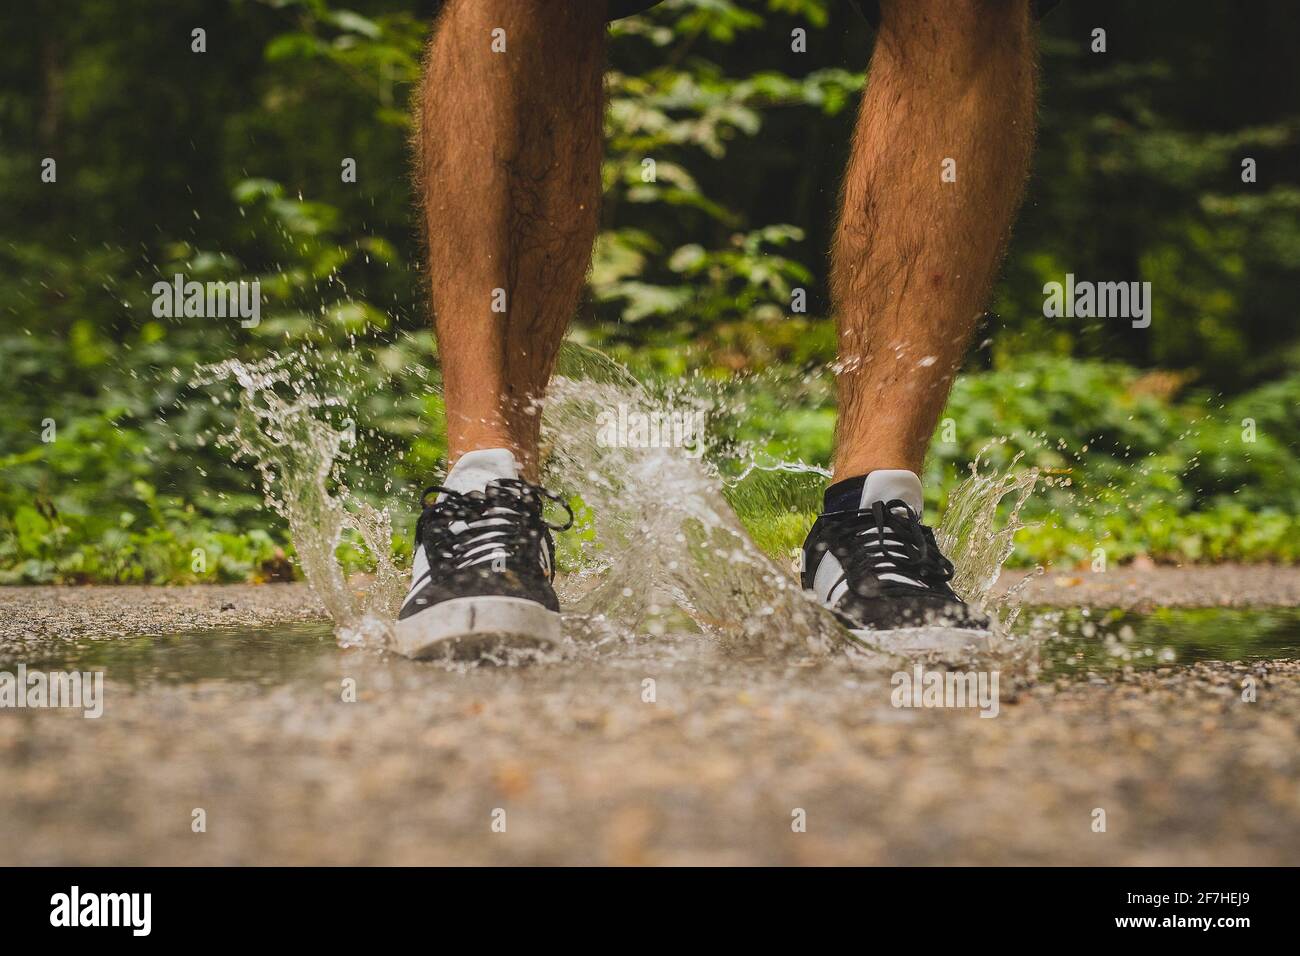 Piernas masculinas saltando en un pequeño estanque en asfalto, creando un gran chapoteo de agua clara que está saliendo de debajo de los zapatos deportivos que el hombre está usando Foto de stock